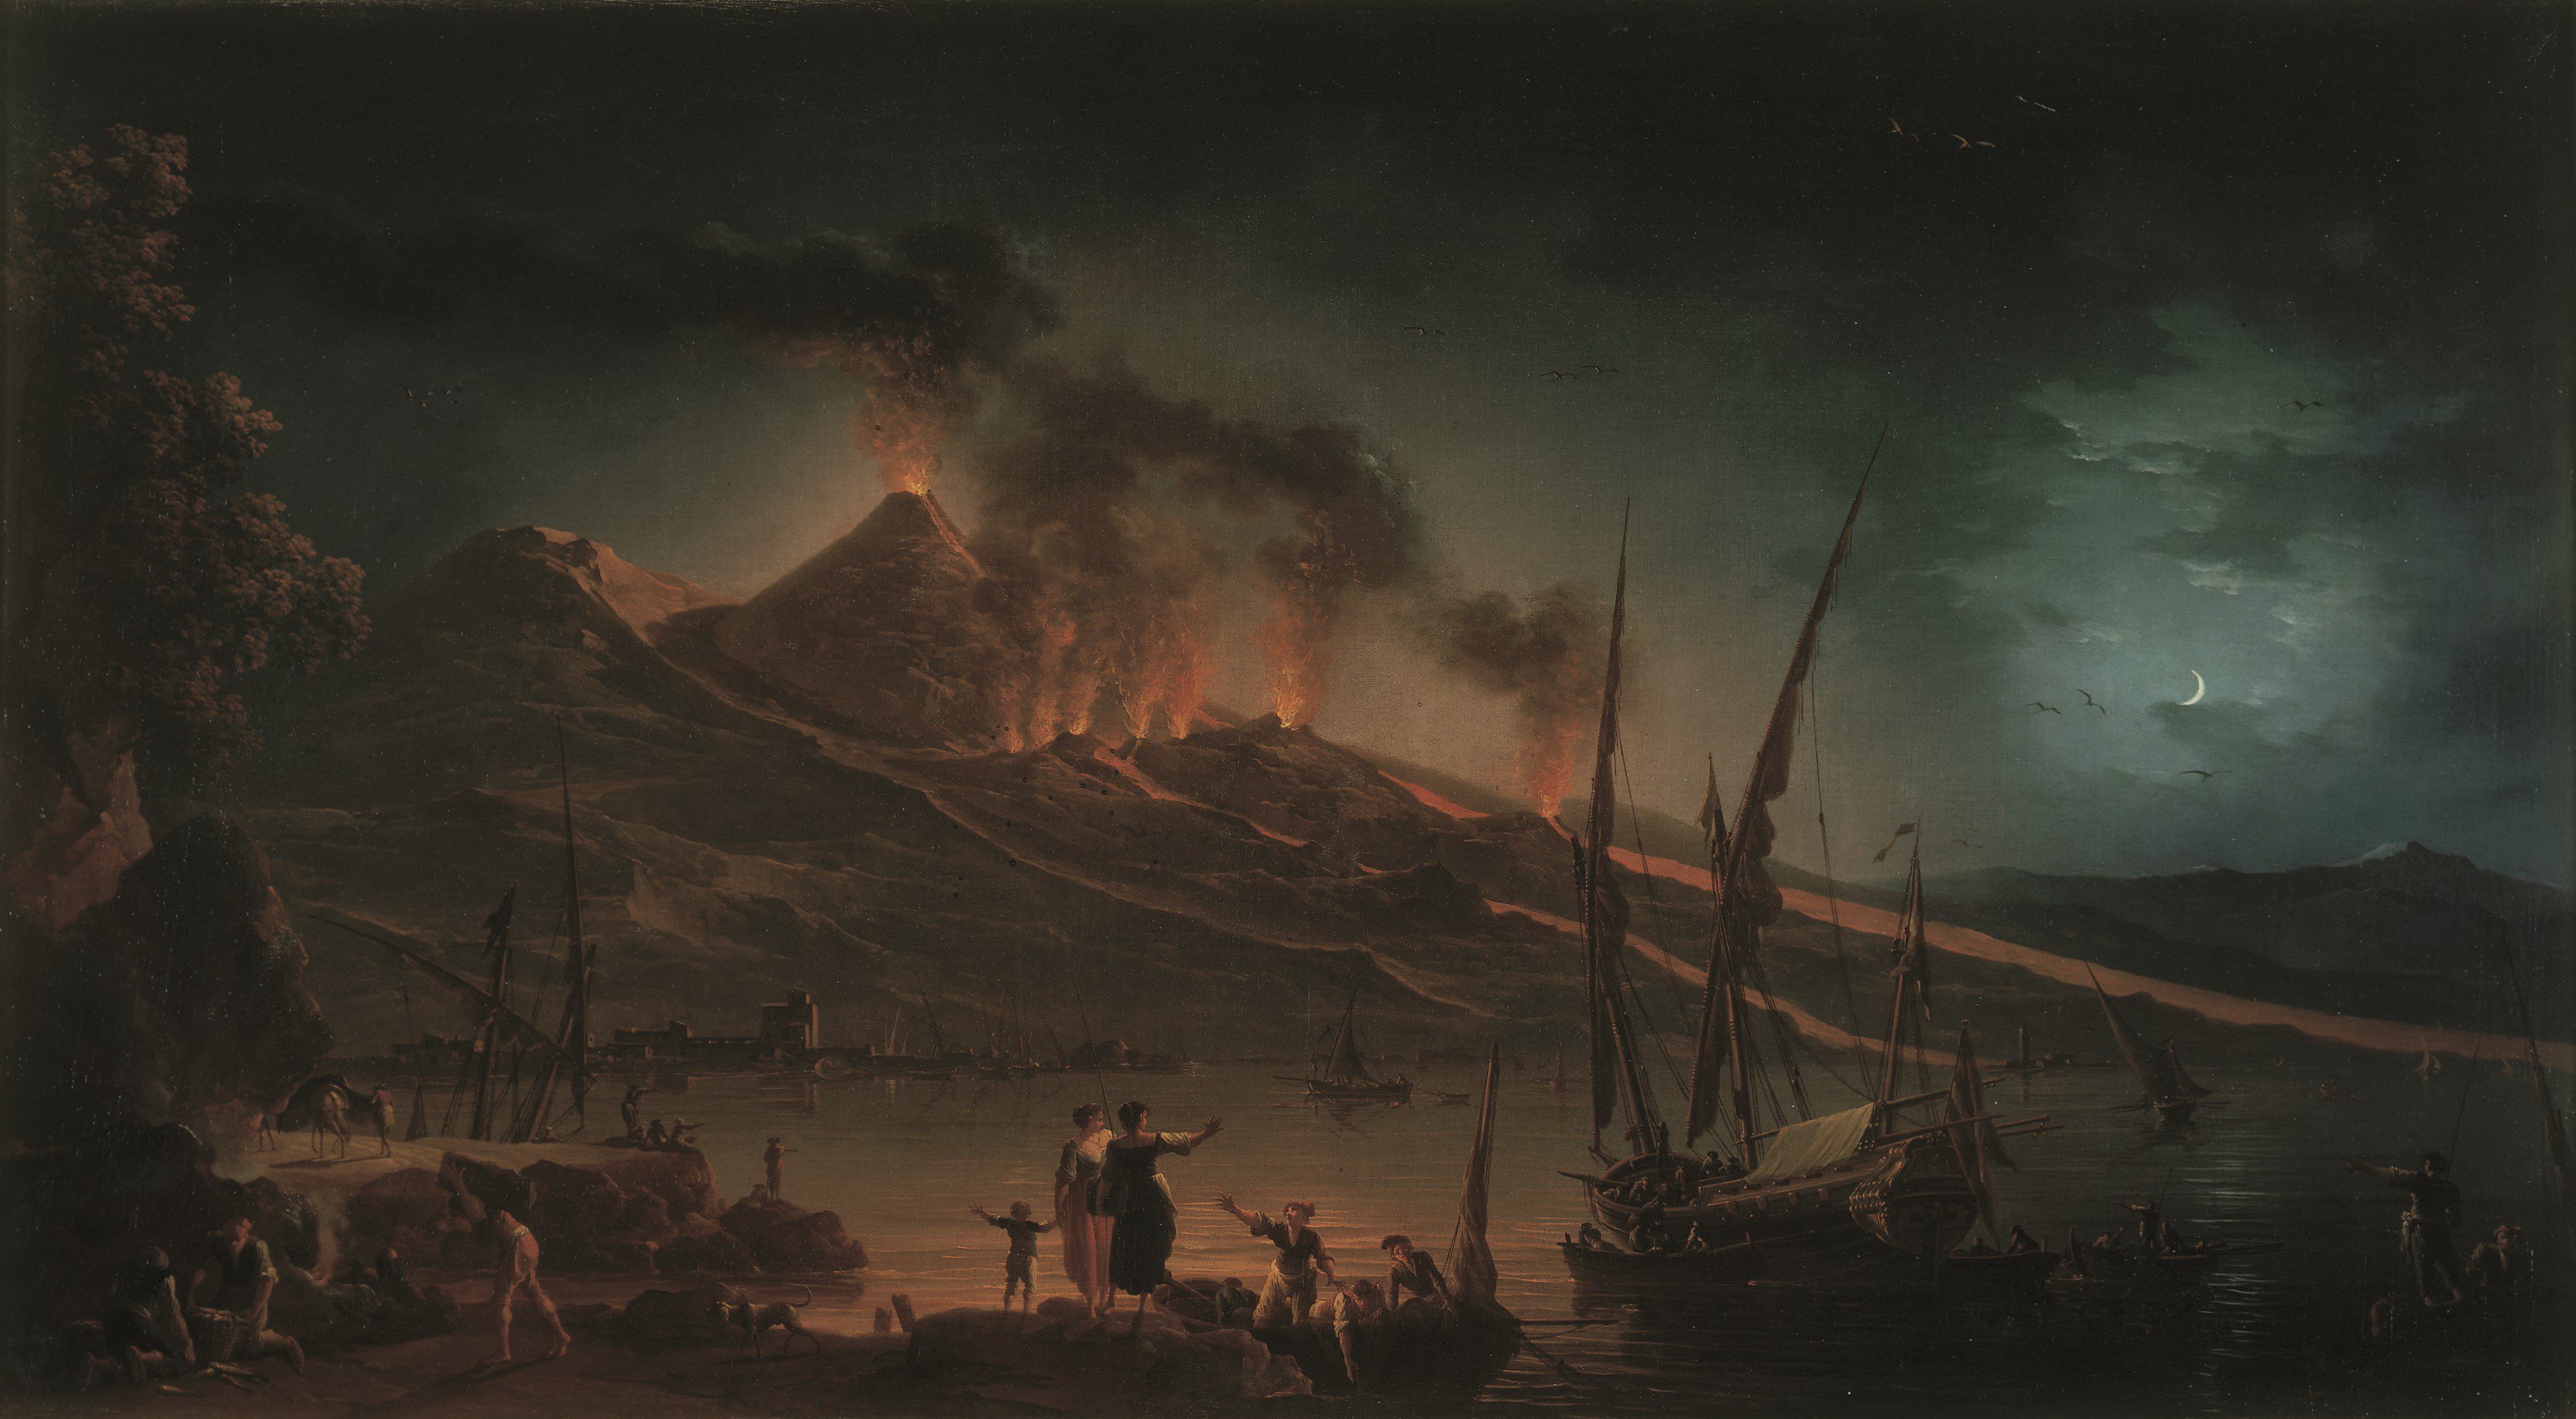 Vesuvius Erupting at night